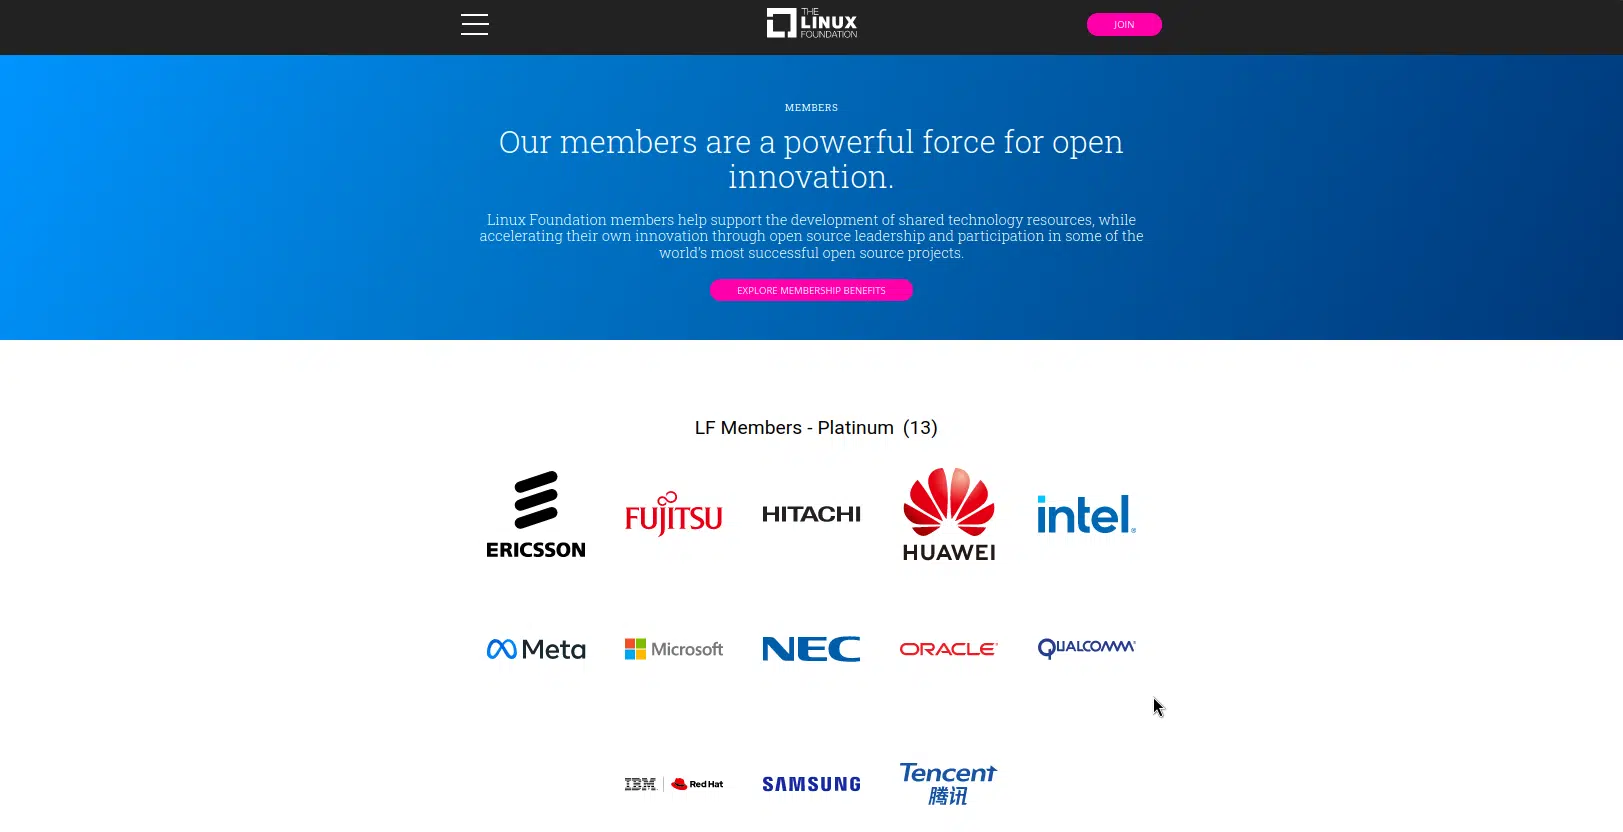 Screenshot der Startseite von ERPNext.